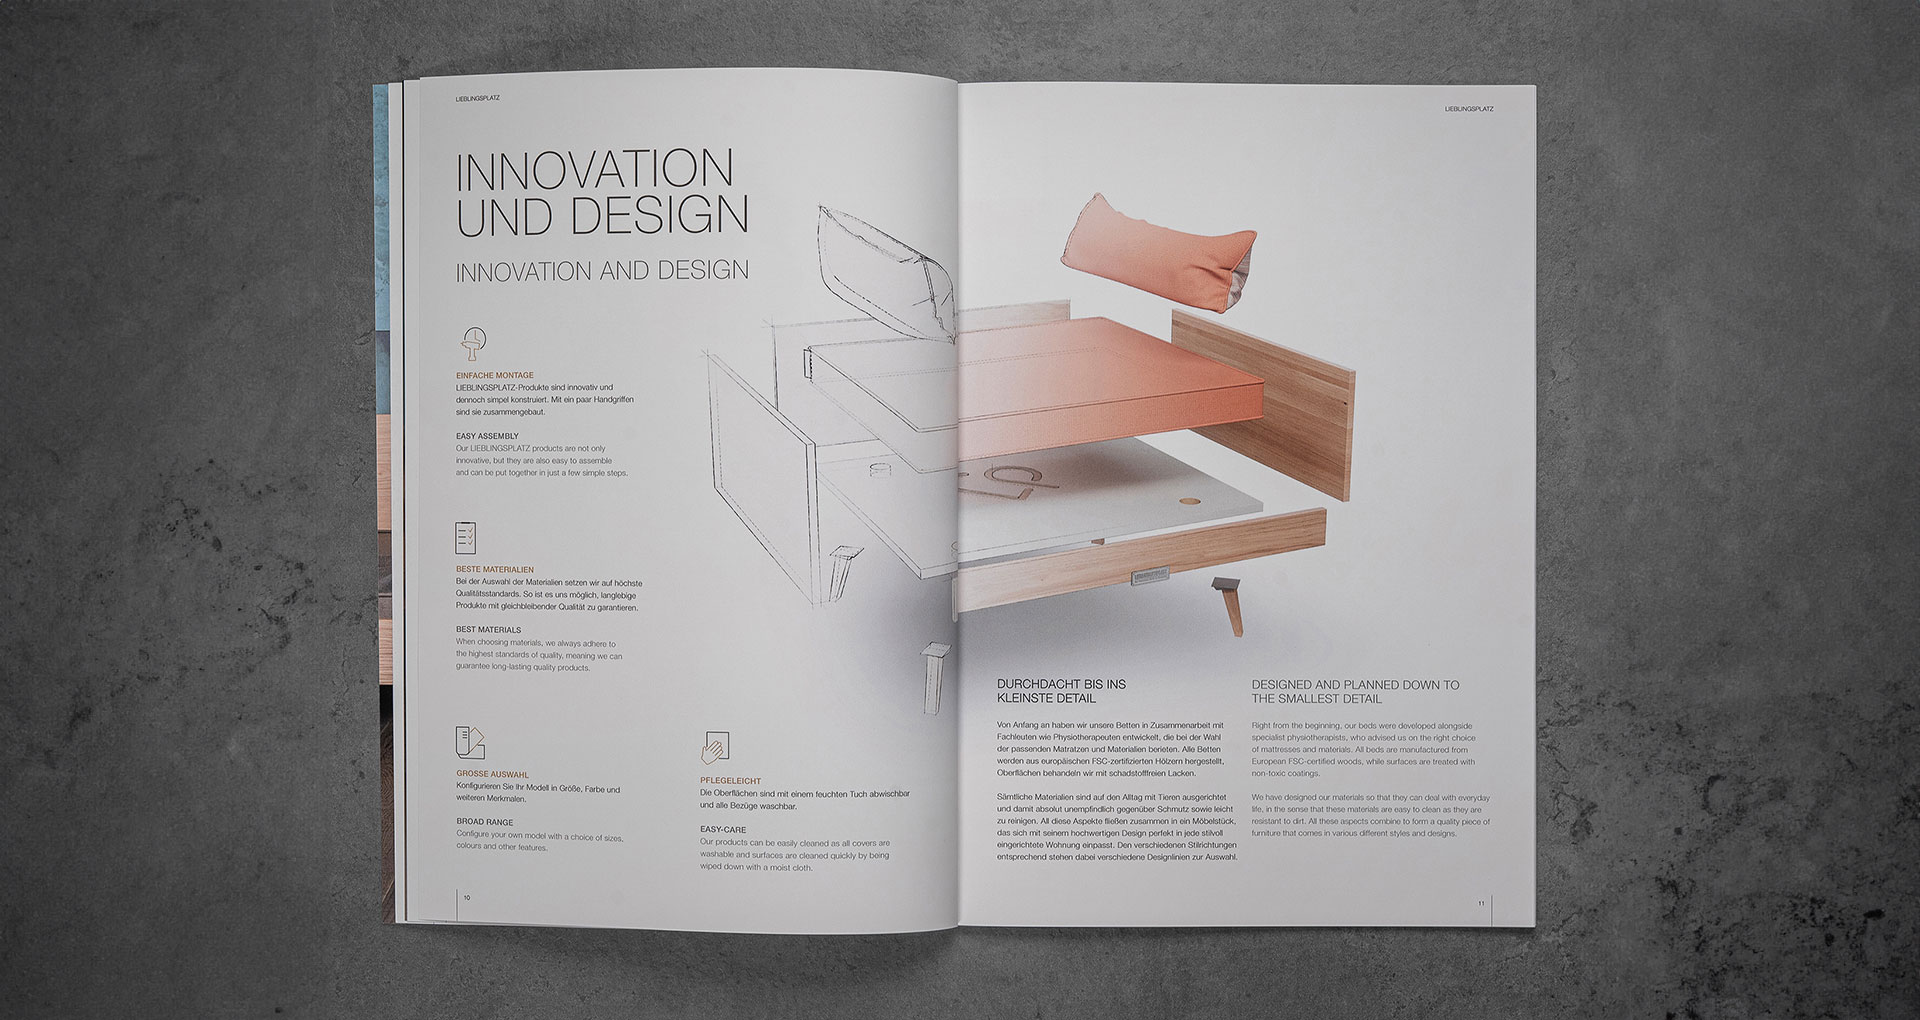 Offenes Magazinlayout, das Innovation und Design eines Bettes präsentiert, mit Text auf der linken Seite und einer technischen Zeichnung sowie einem Foto des Bettes auf der rechten Seite.